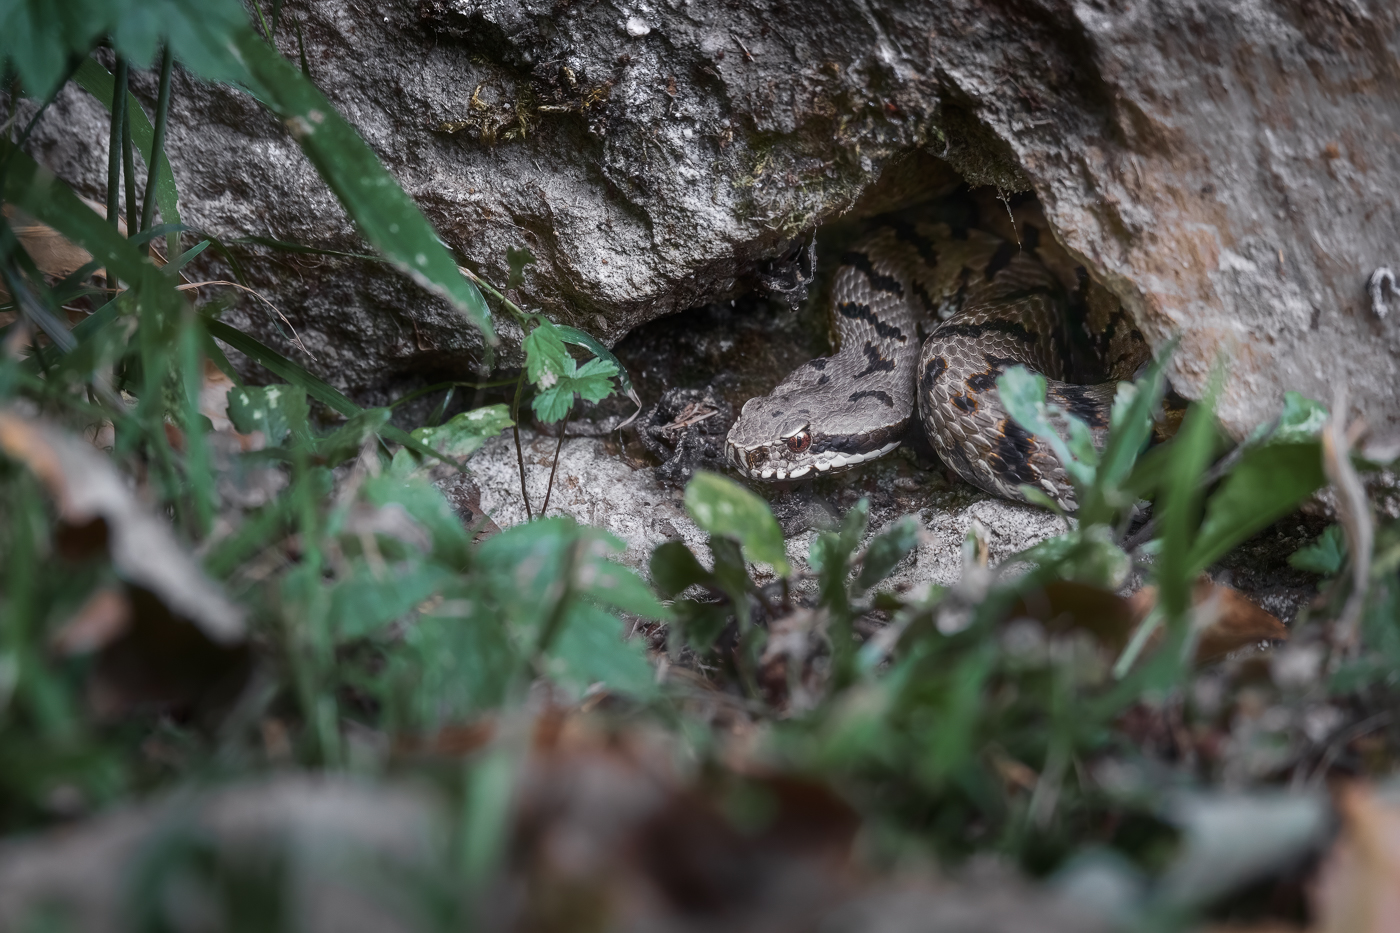 Una vipera comune (Vipera aspis) si affaccia dal suo giaciglio per analizzare l’esterno. Prealpi Giulie, Italia.